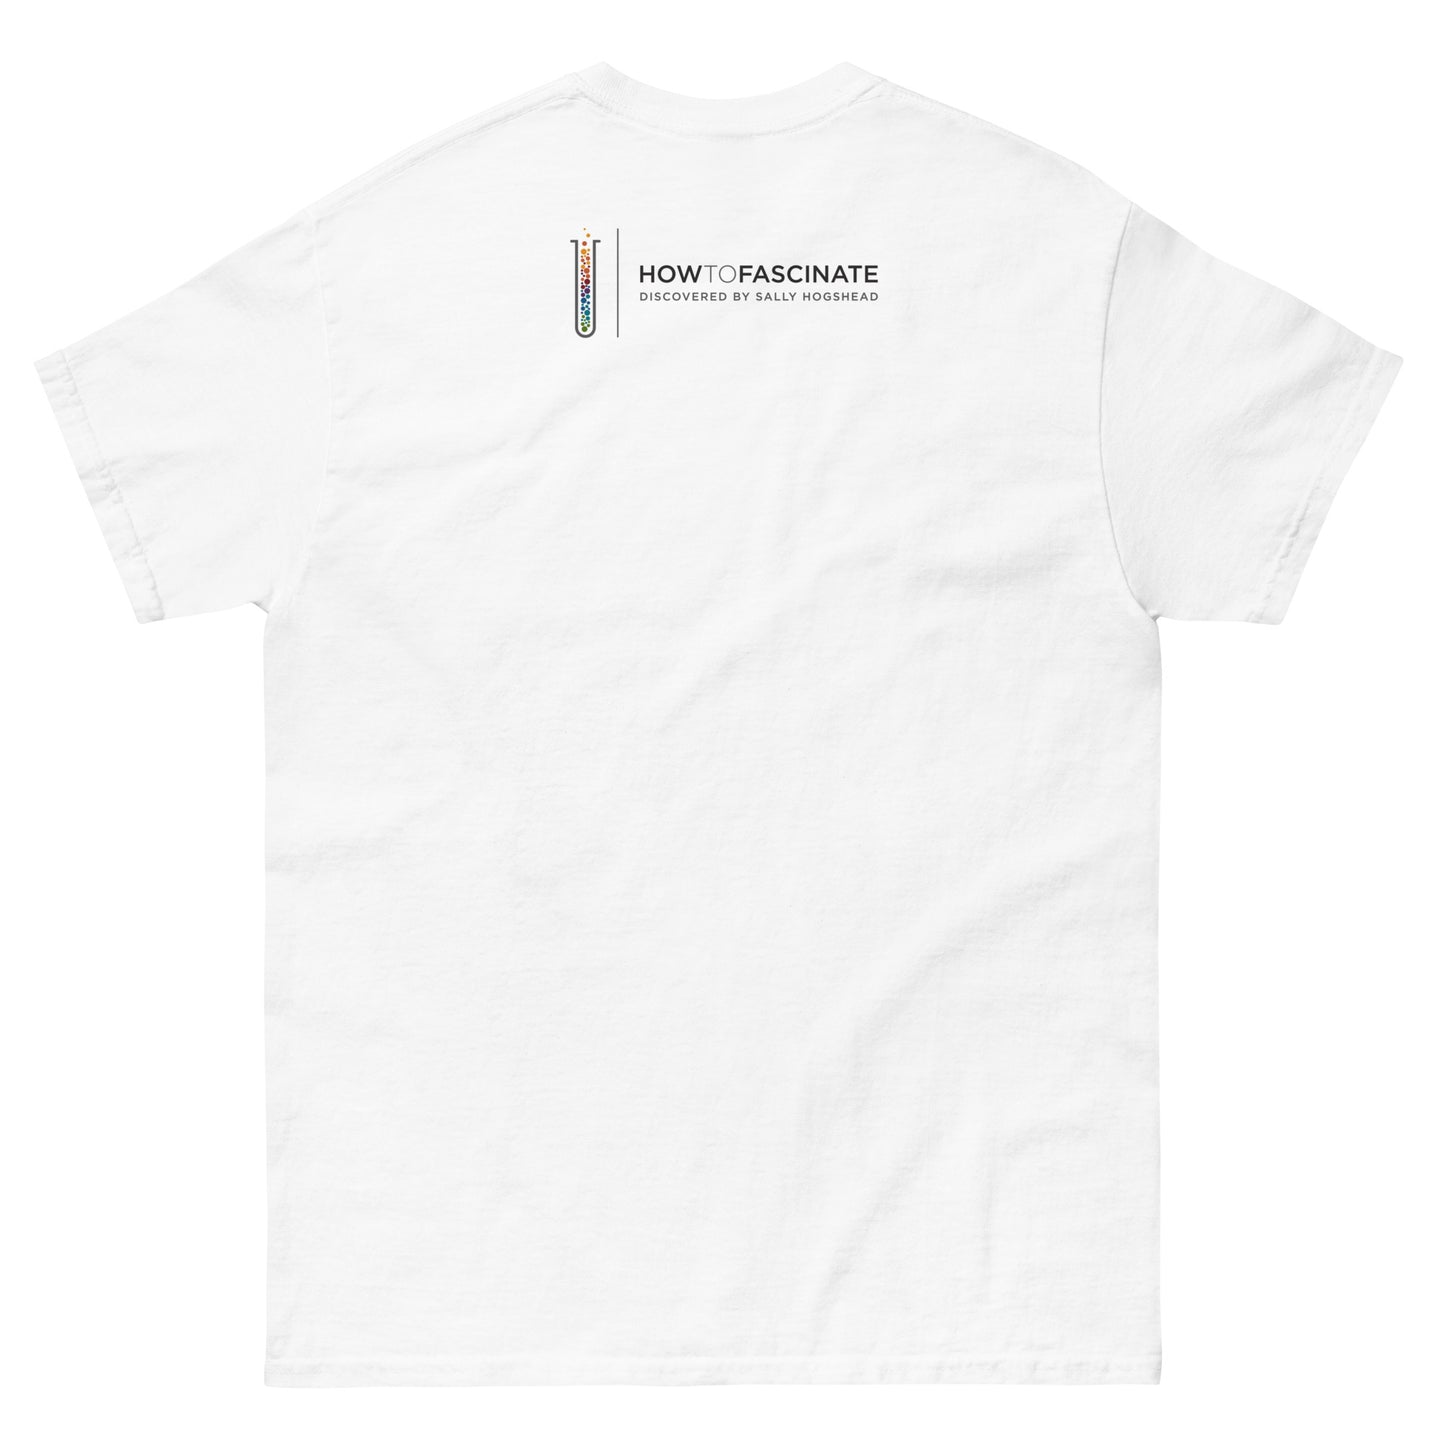 The Subtle Touch - Men's Archetype short sleeve t-shirt